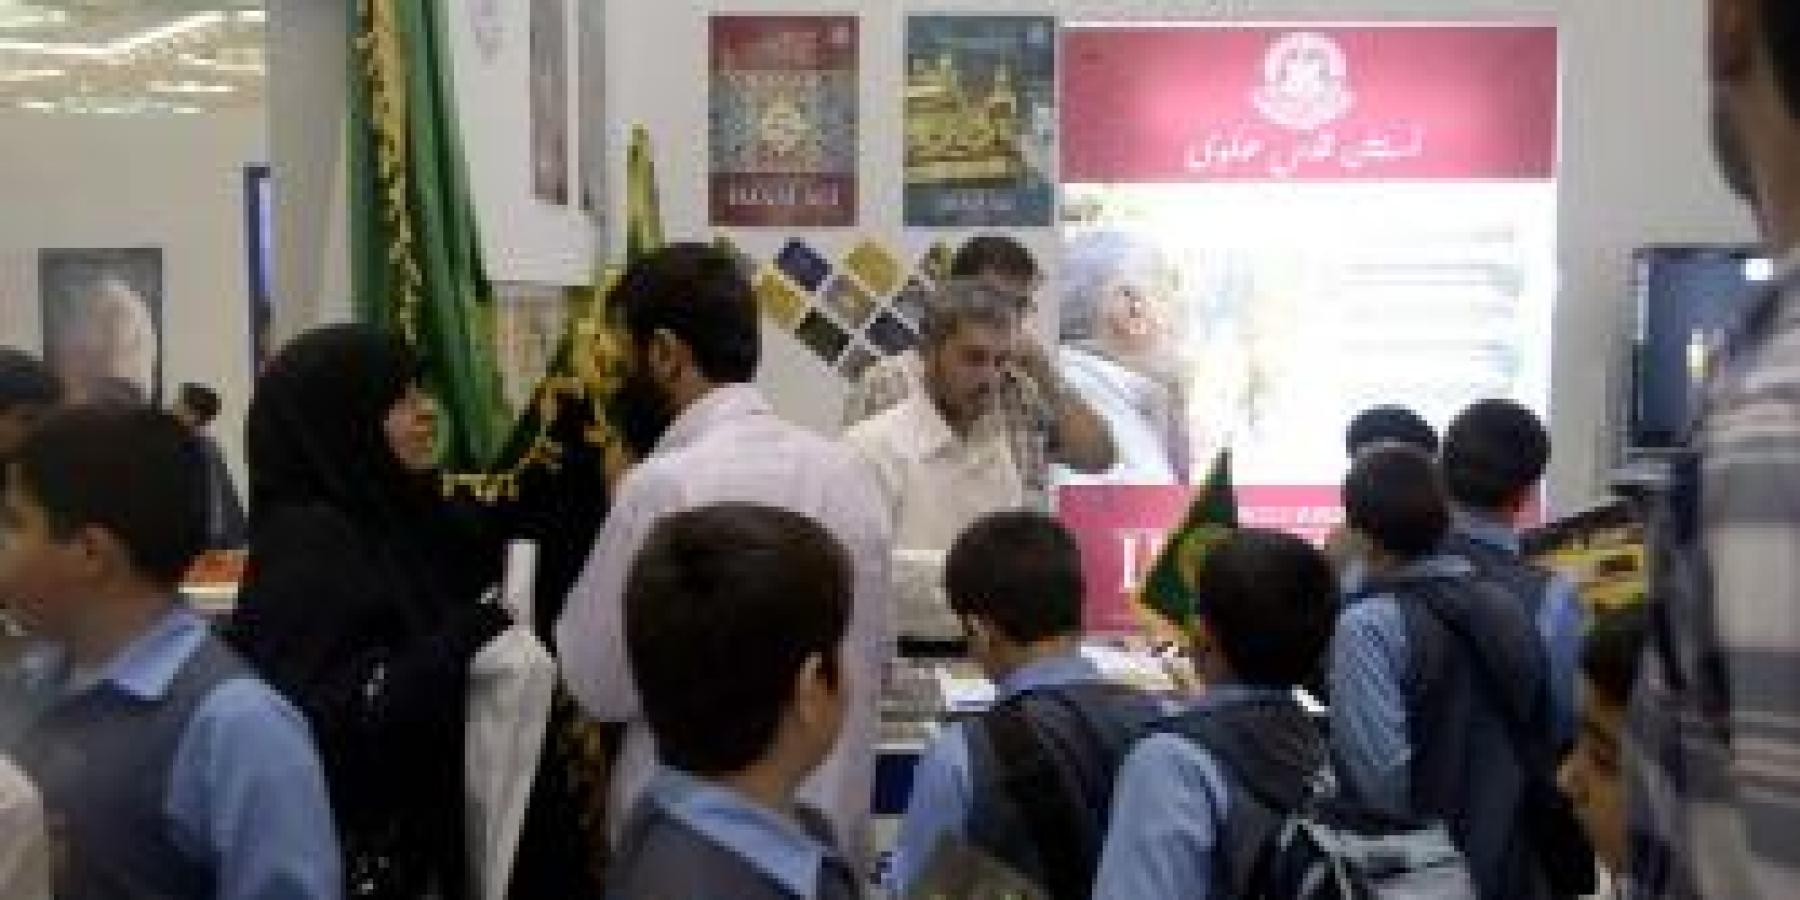 العتبة العلوية المقدسة تشارك في معرض طهران الدولي الخامس للإعلام الرقمي